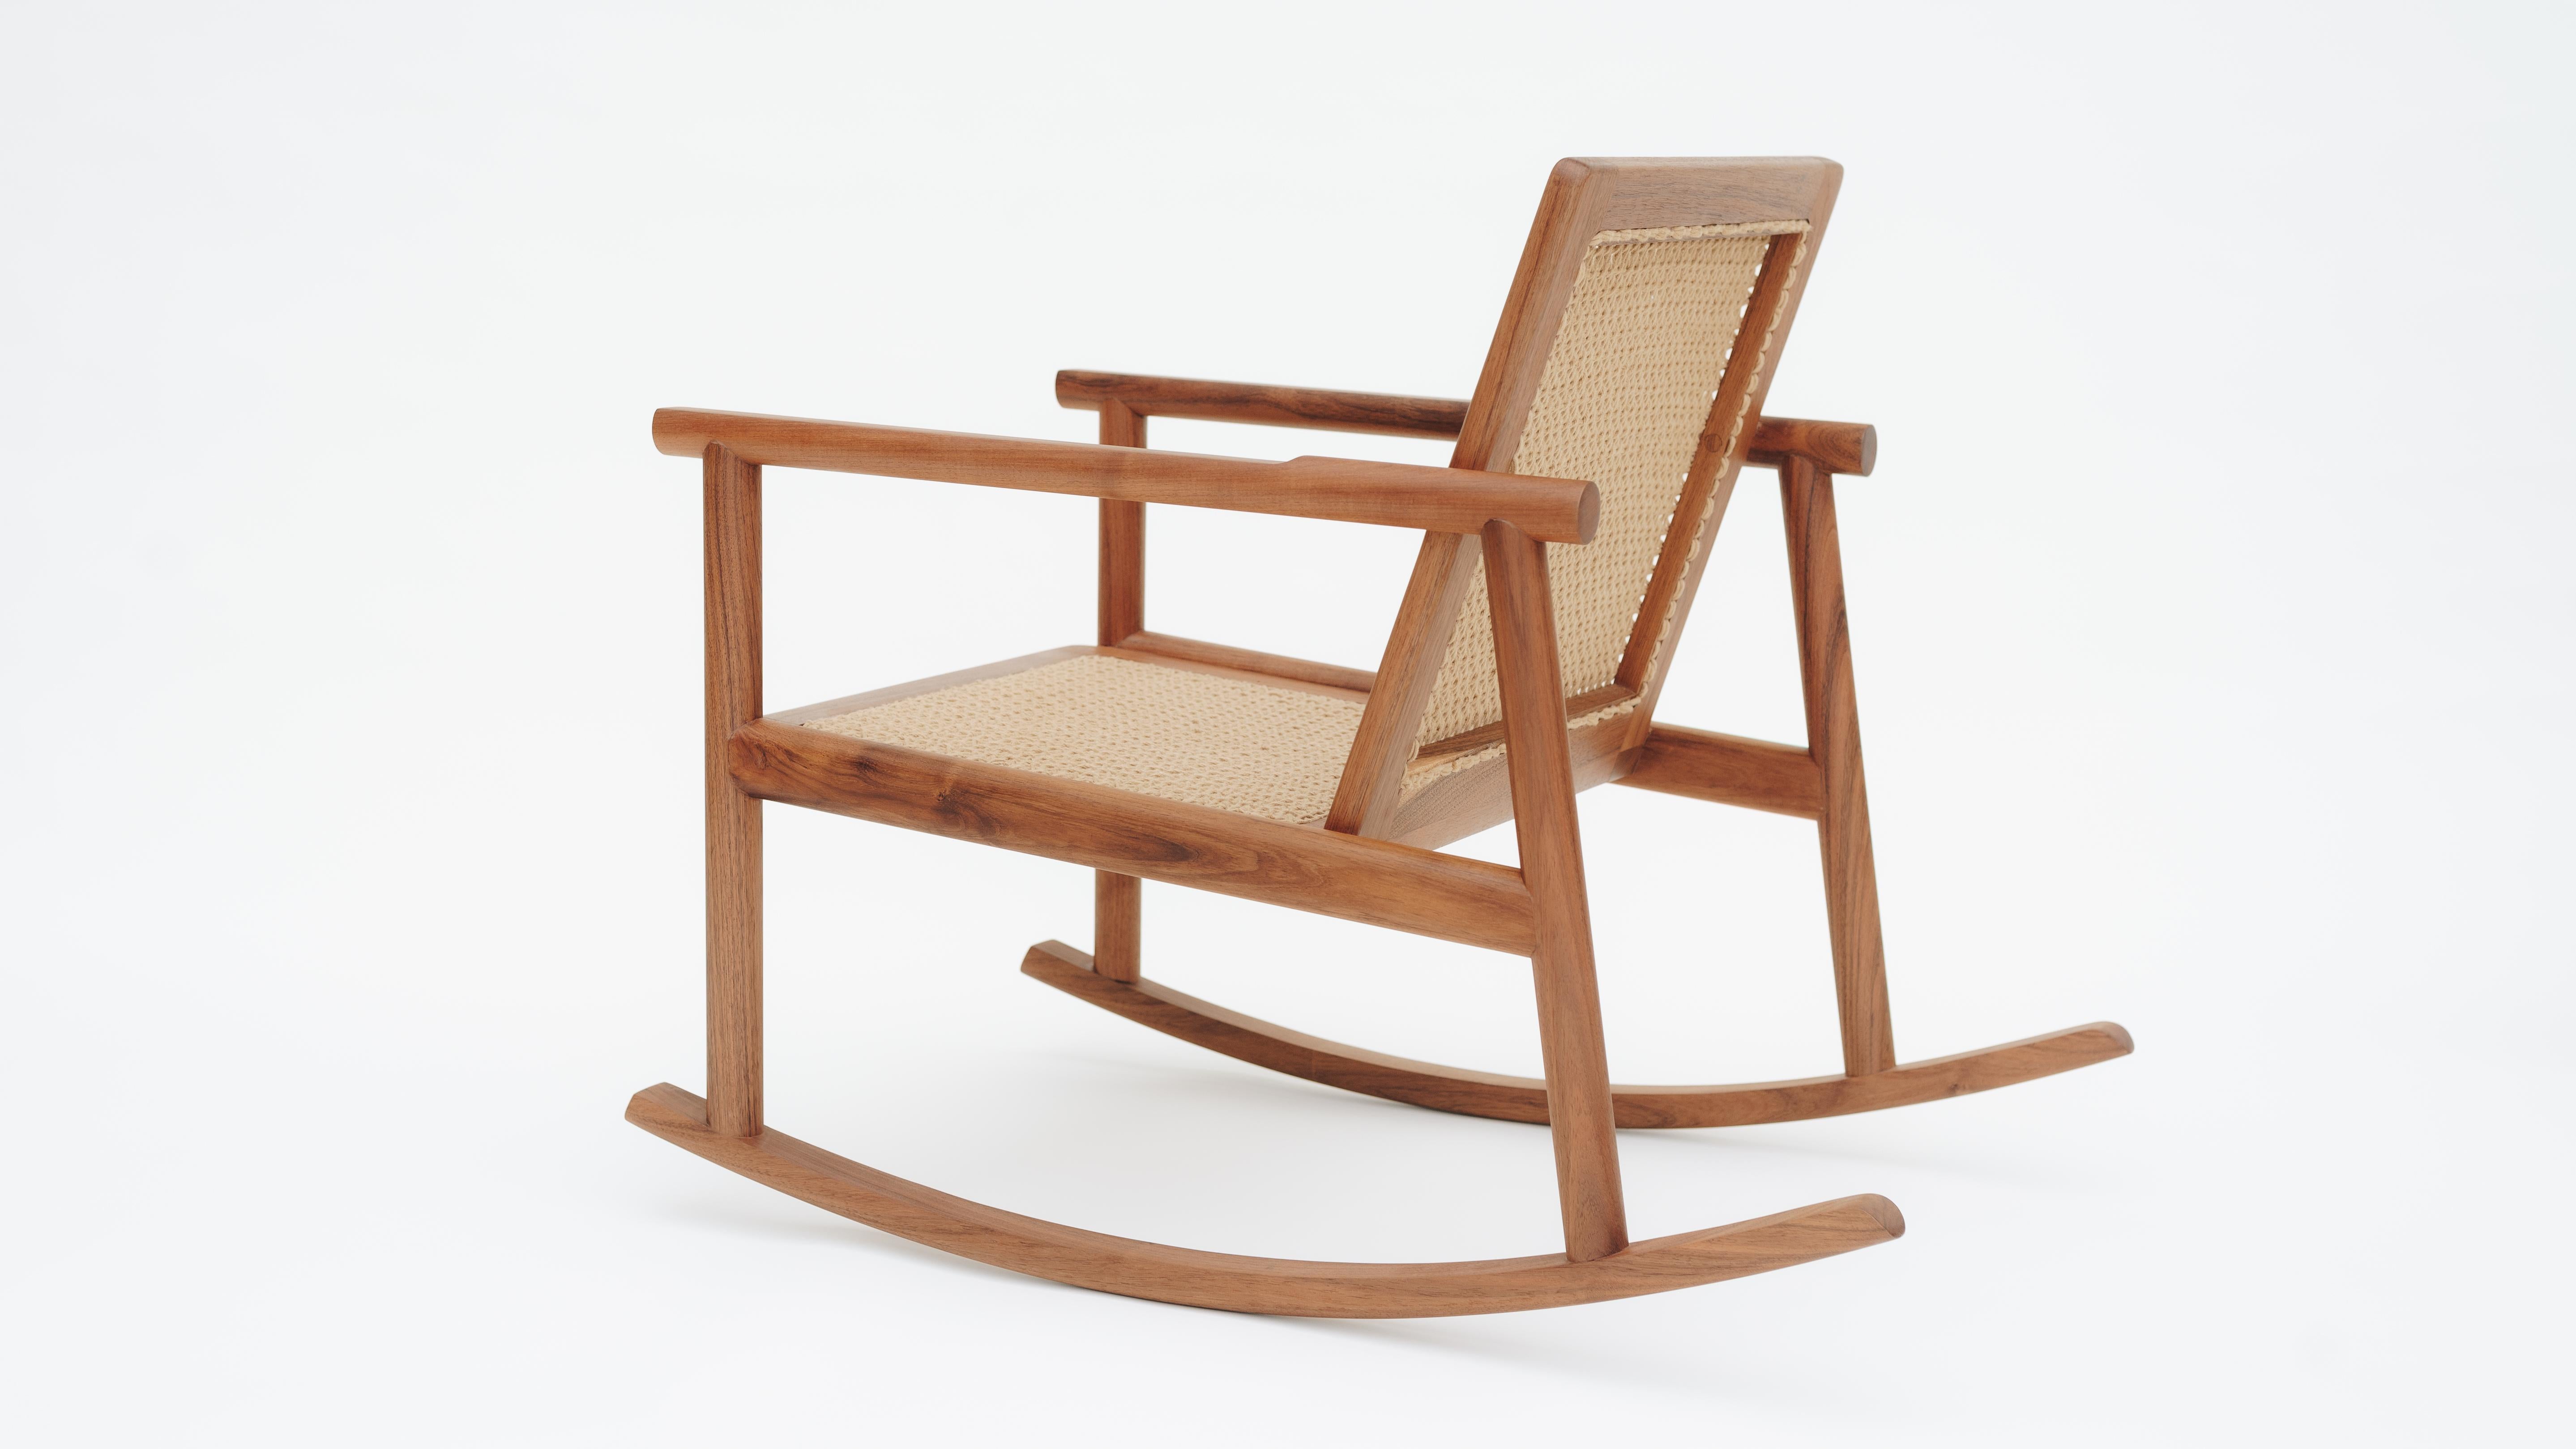 Le design du rocking-chair Cocom s'inspire des bascules et fauteuils en osier traditionnellement tressés au Yucatan. De nos jours, cette tradition est en train de disparaître, tout comme l'art de tisser des chaises à la main. C'est pourquoi